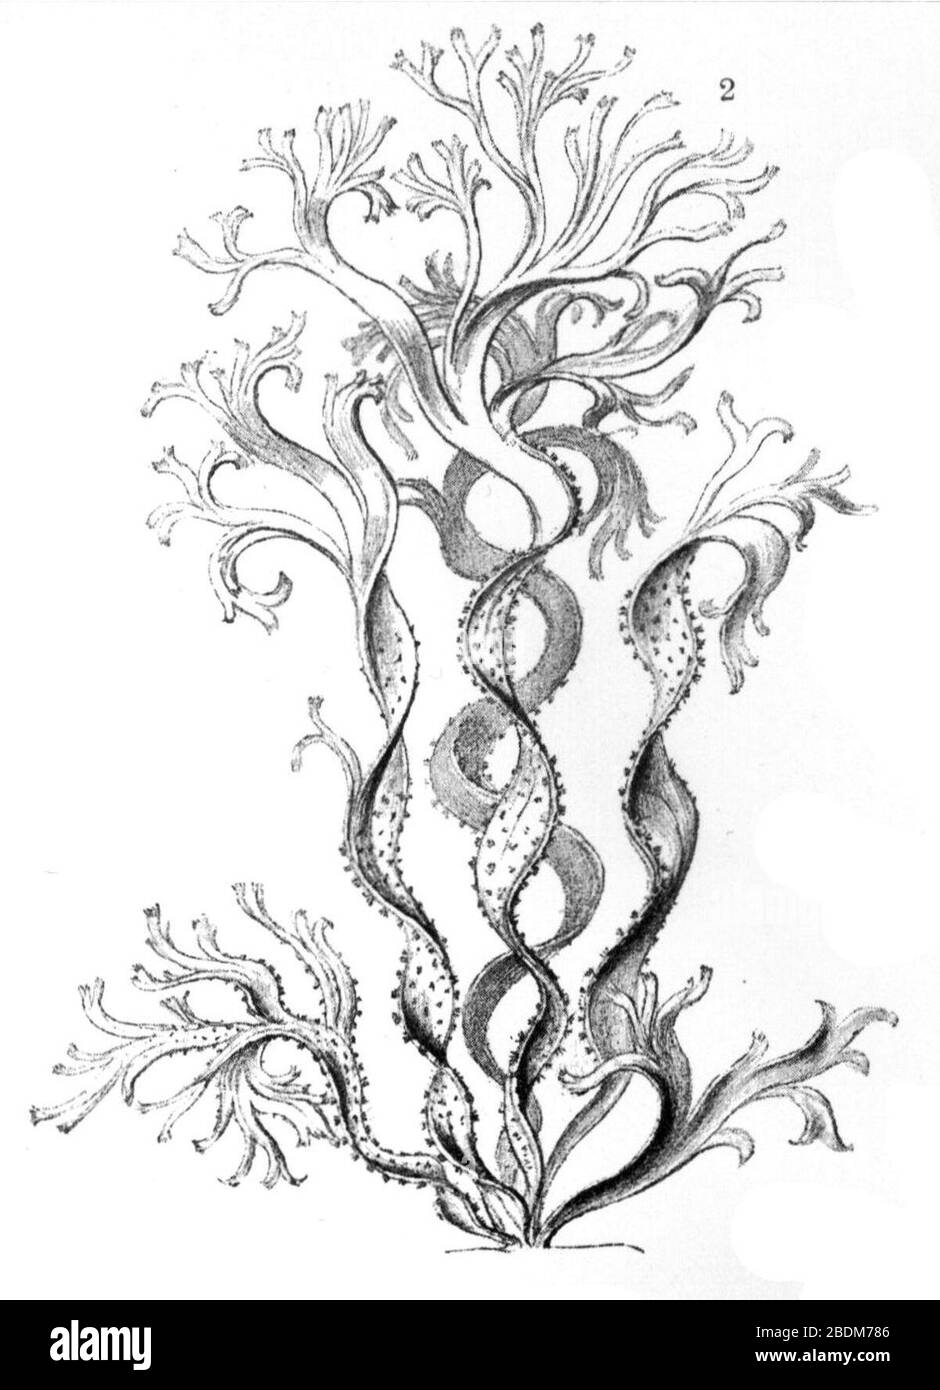 Haeckel Cutleria multifida. Stock Photo